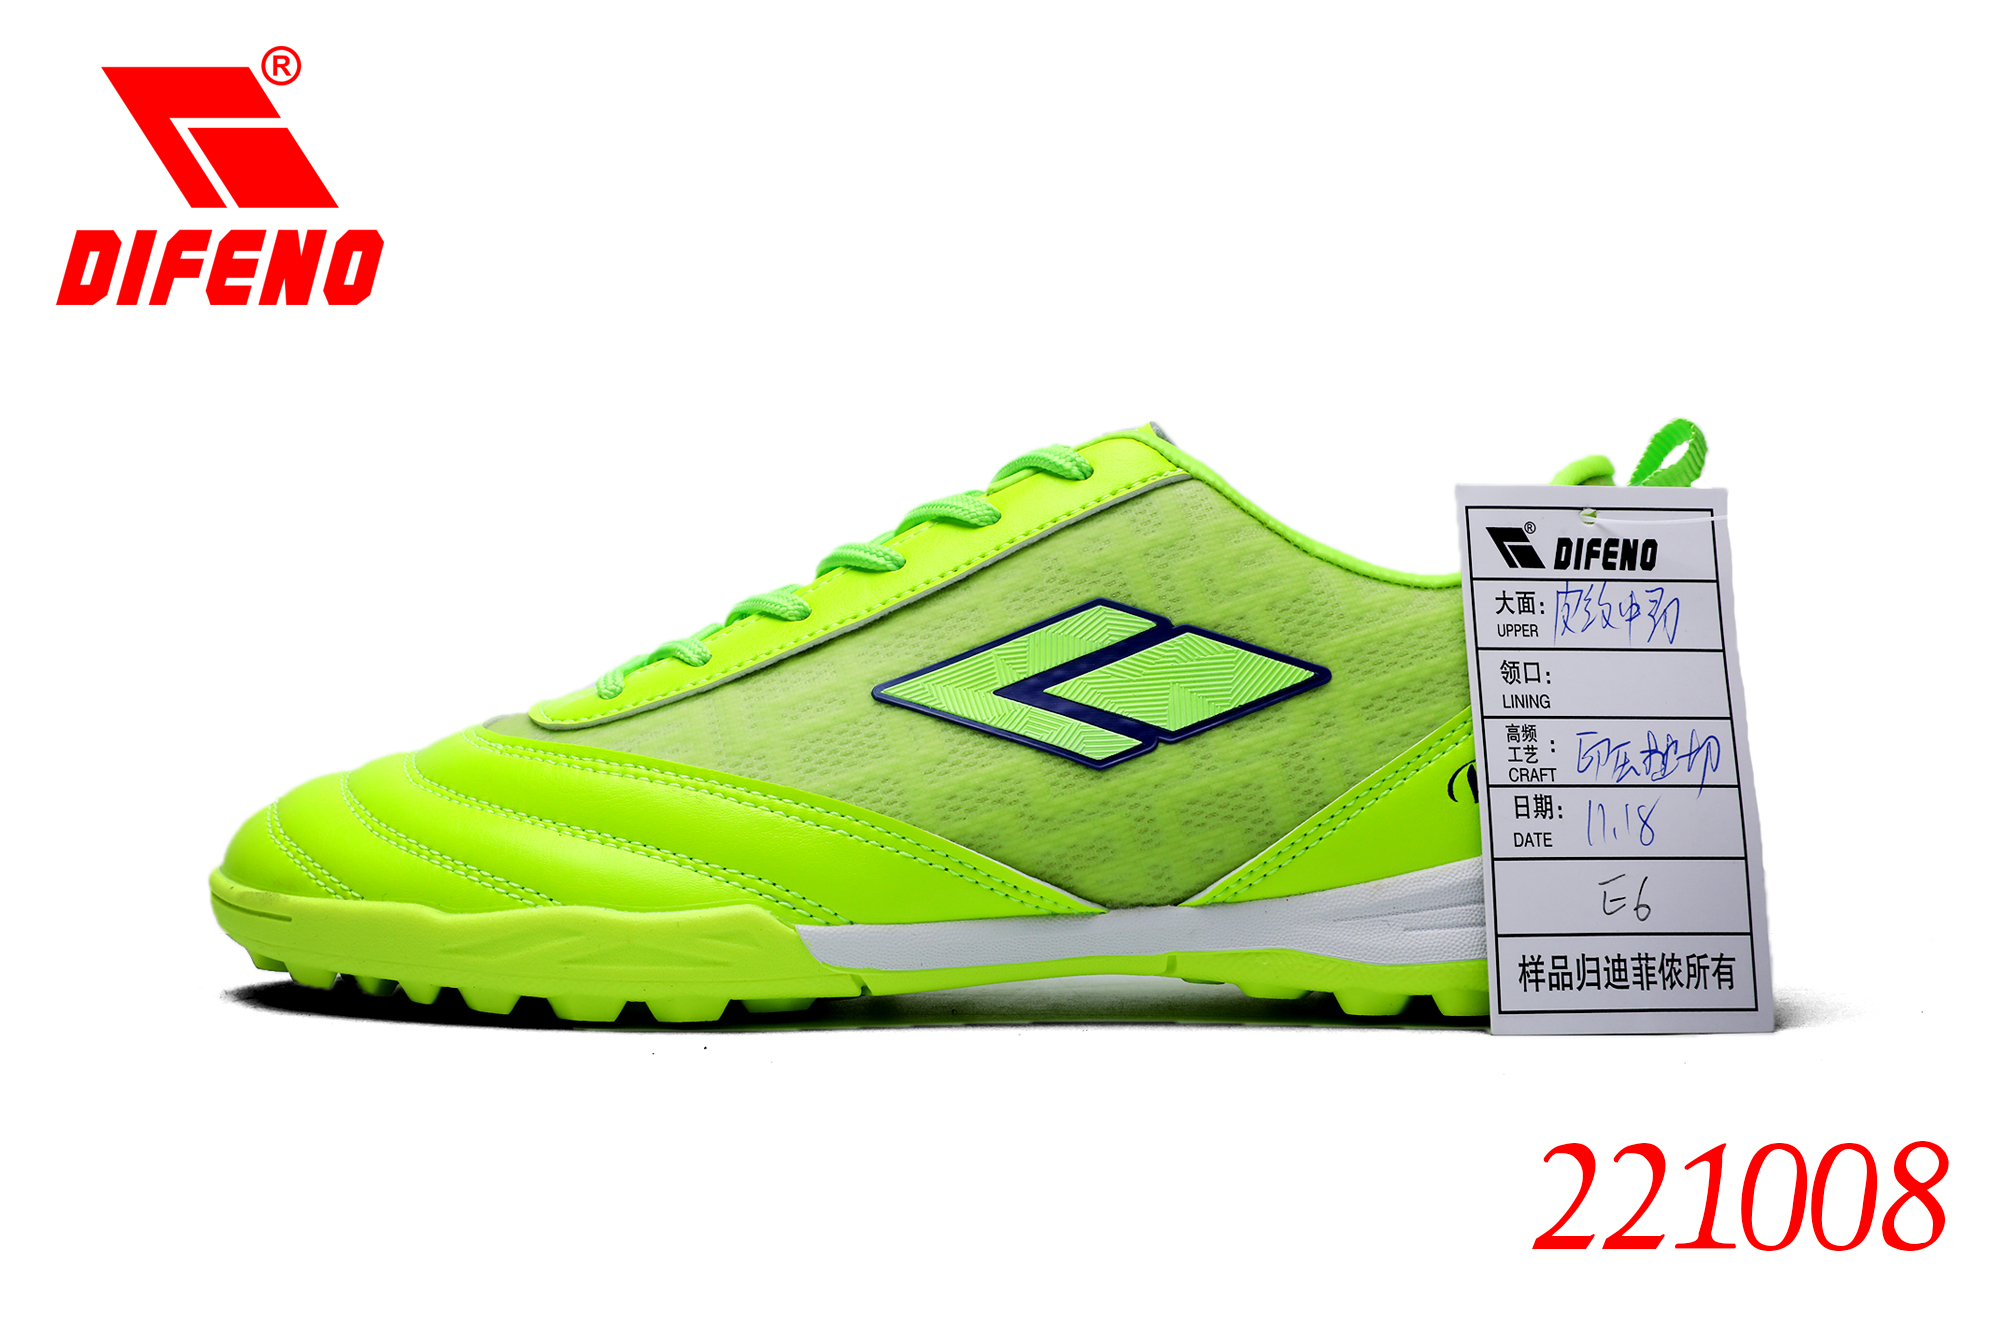 Këpucë futbolli DIFENO Këpucë futbolli për djem dhe vajza Këpucë futbolli për djem dhe vajza.